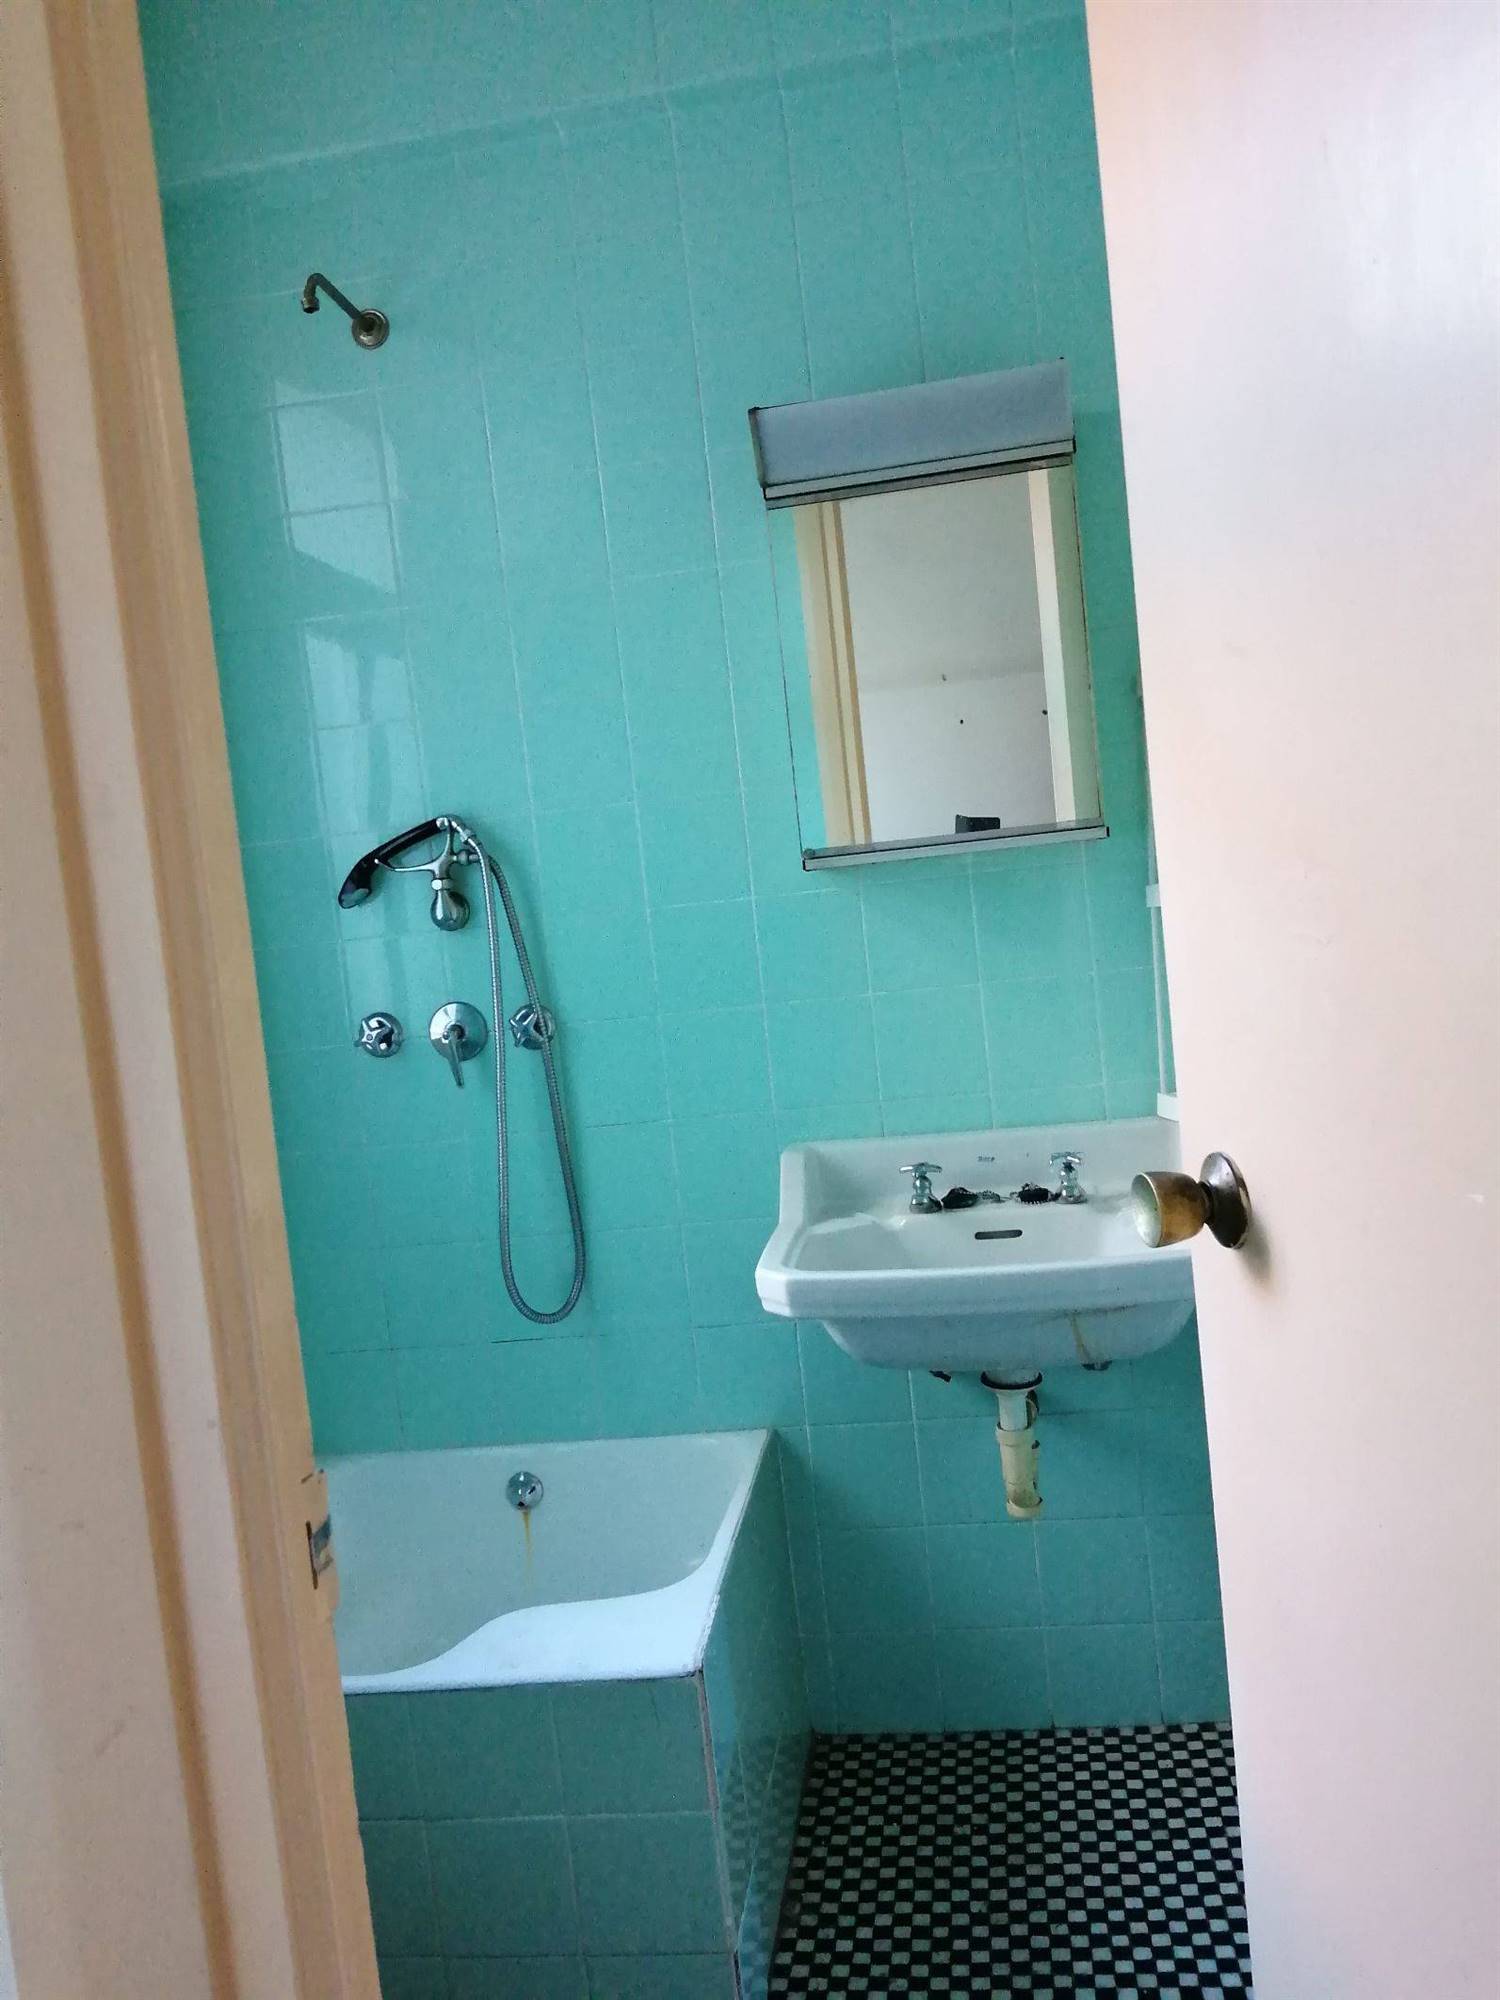 El baño antes de la reforma era anticuado y en color azul.